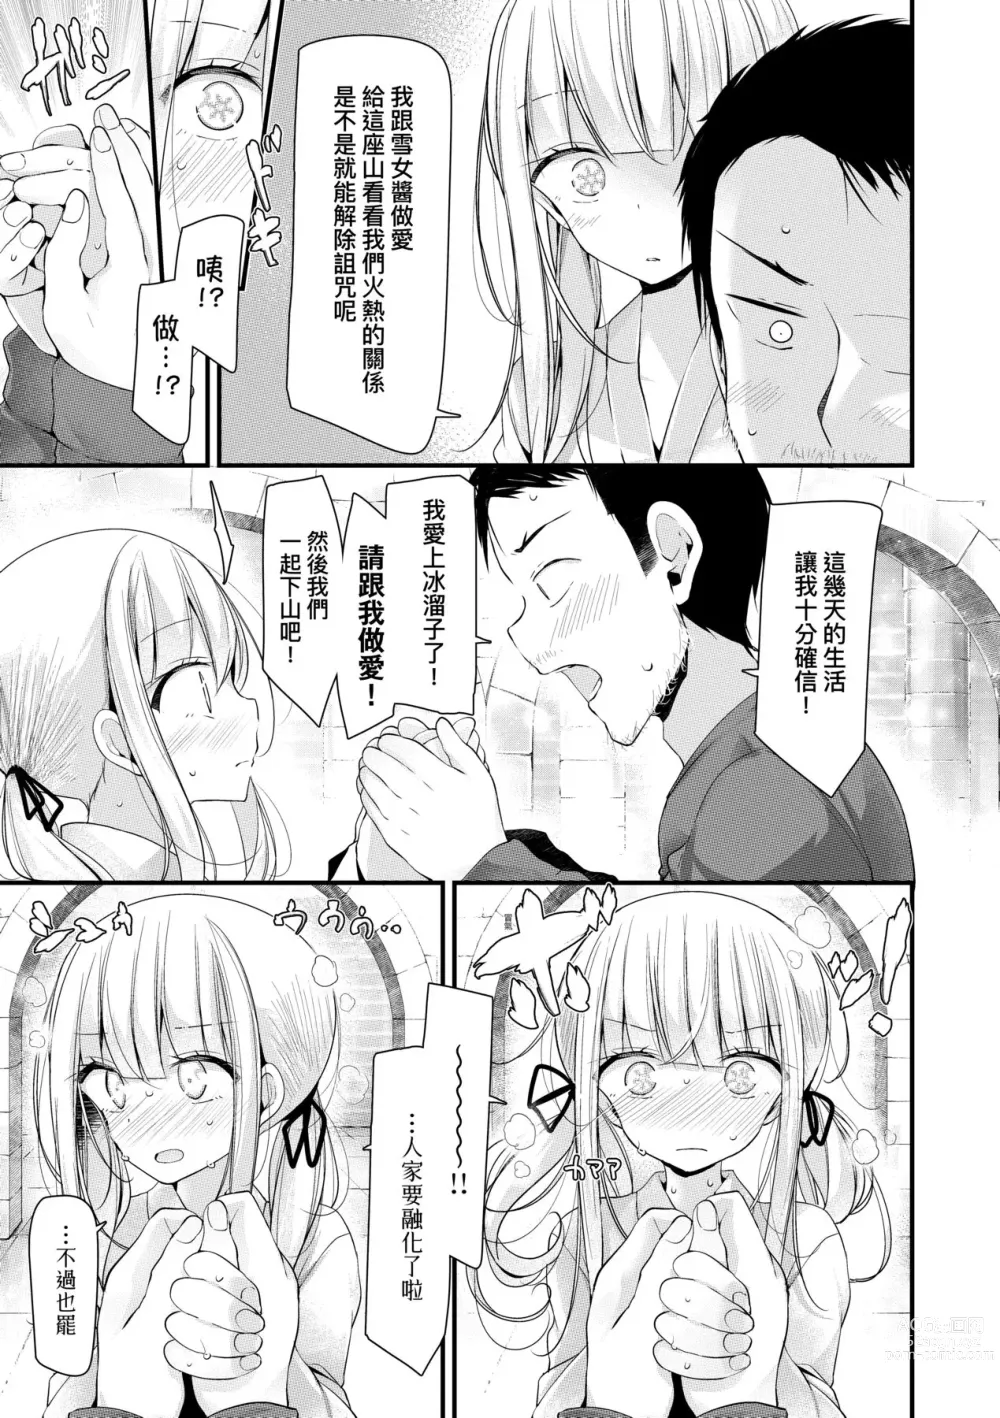 Page 14 of manga 年上的少女你也很喜歡吧? (decensored)